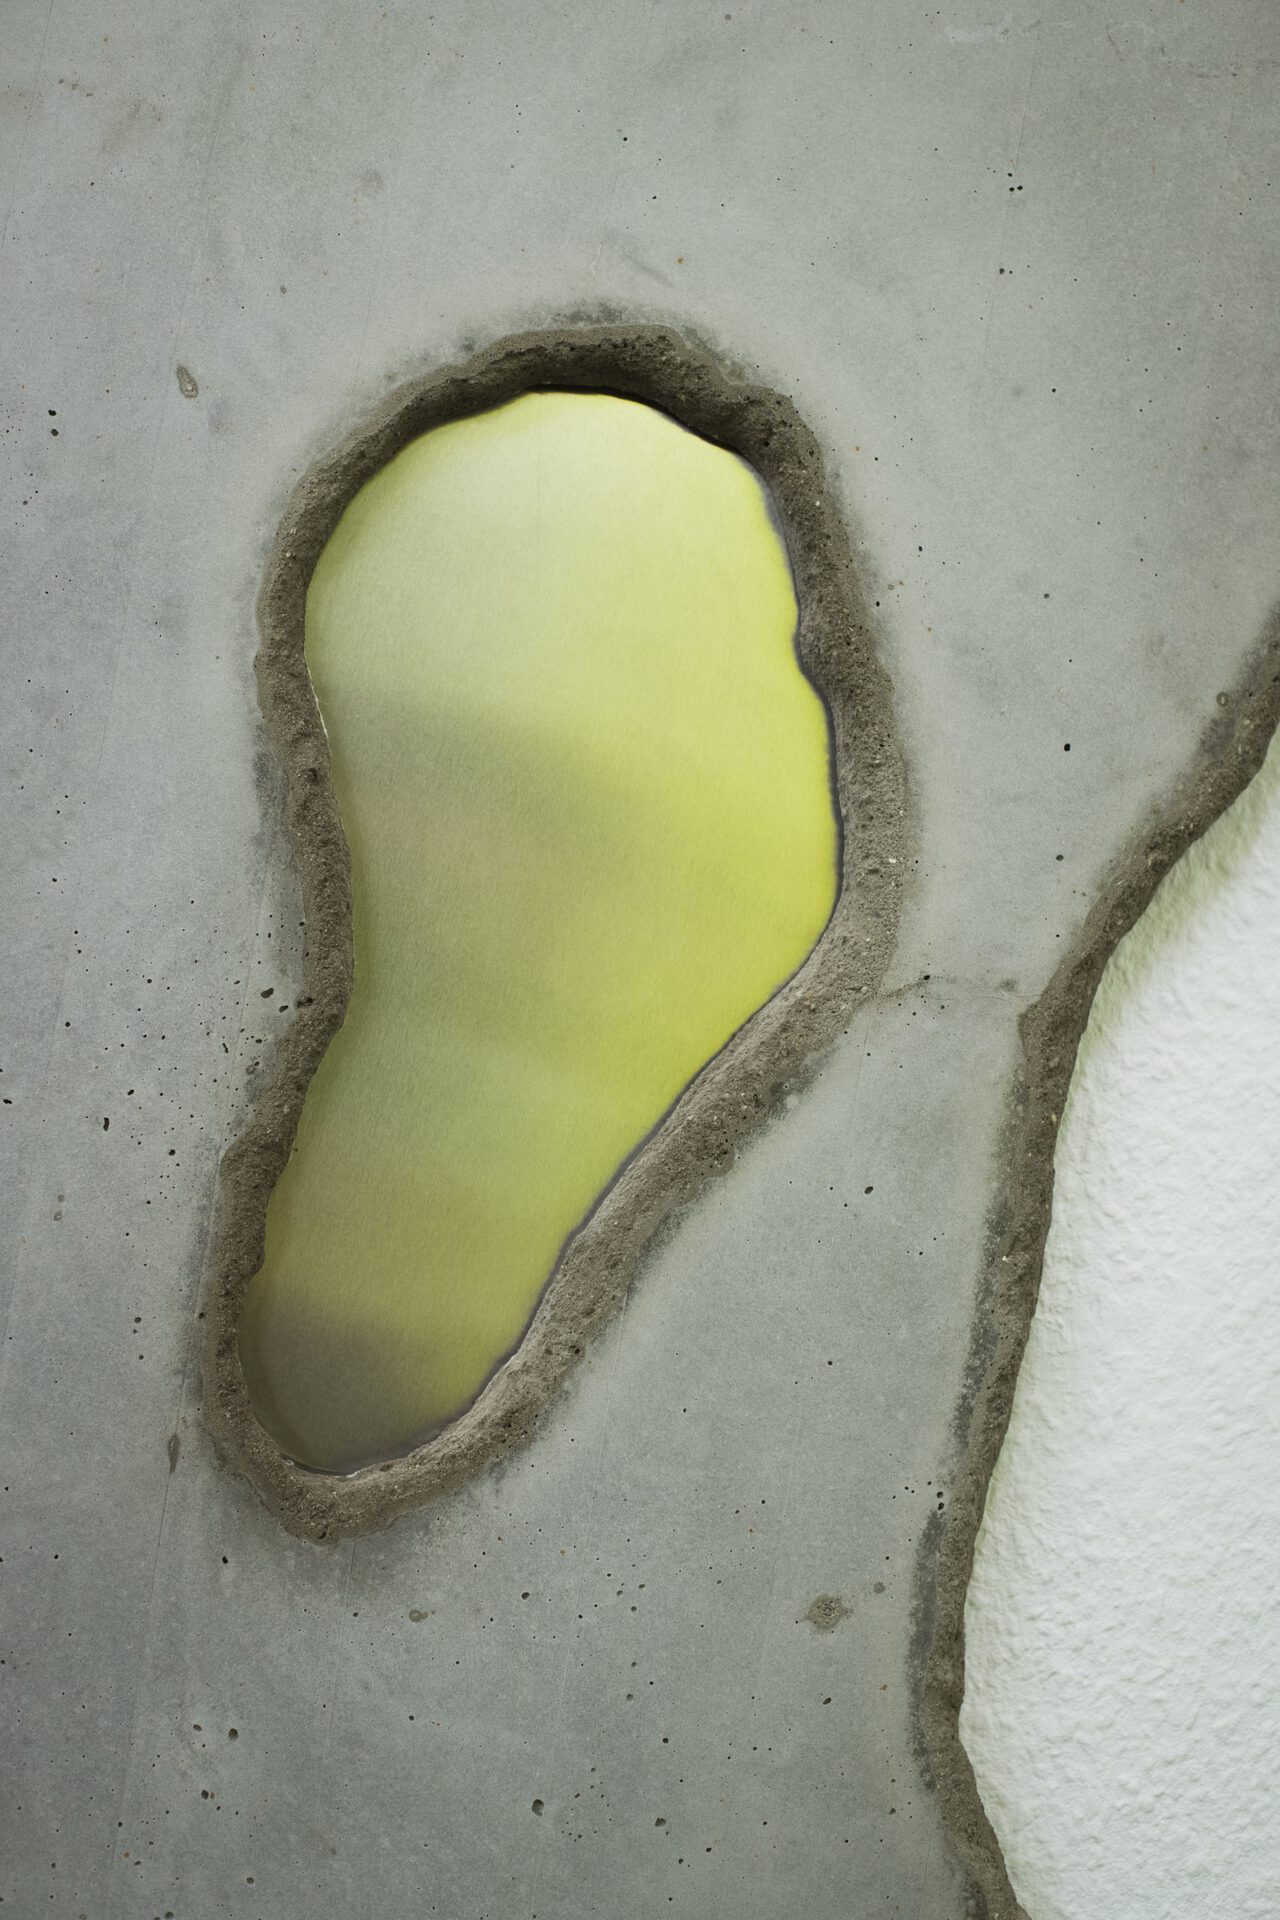 Pauline Cordier, Tamis Misat # 3, concrete / aluminium, 110x61x2cm (43.3x24x0.7 inches), 2020